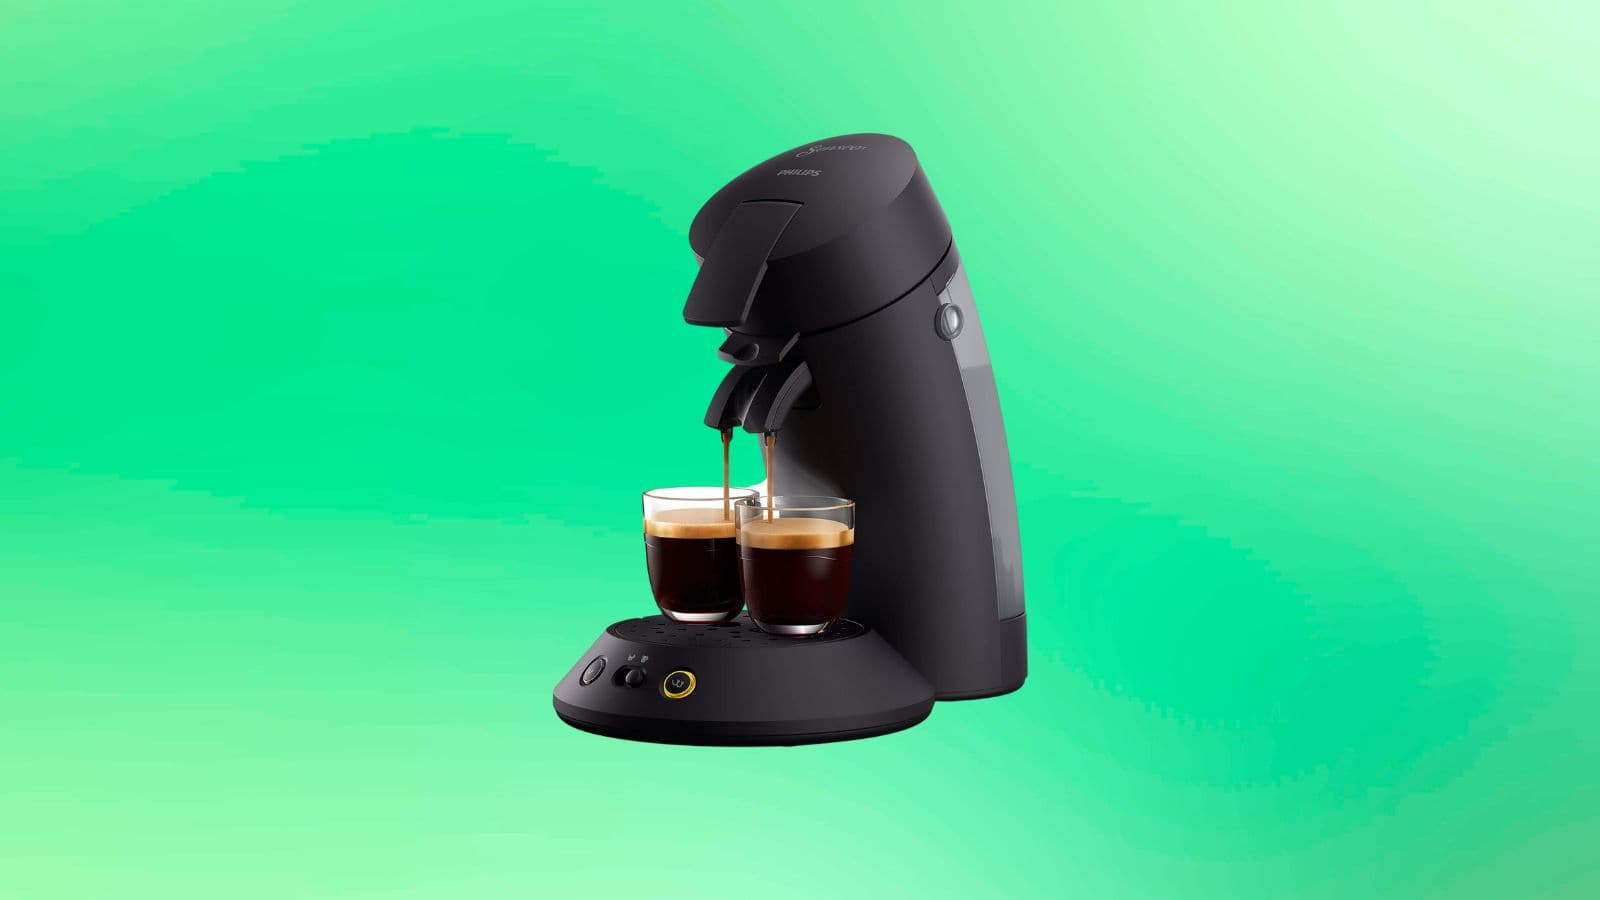 Une machine à café Senseo à un prix si bas, ce serait dommage de s